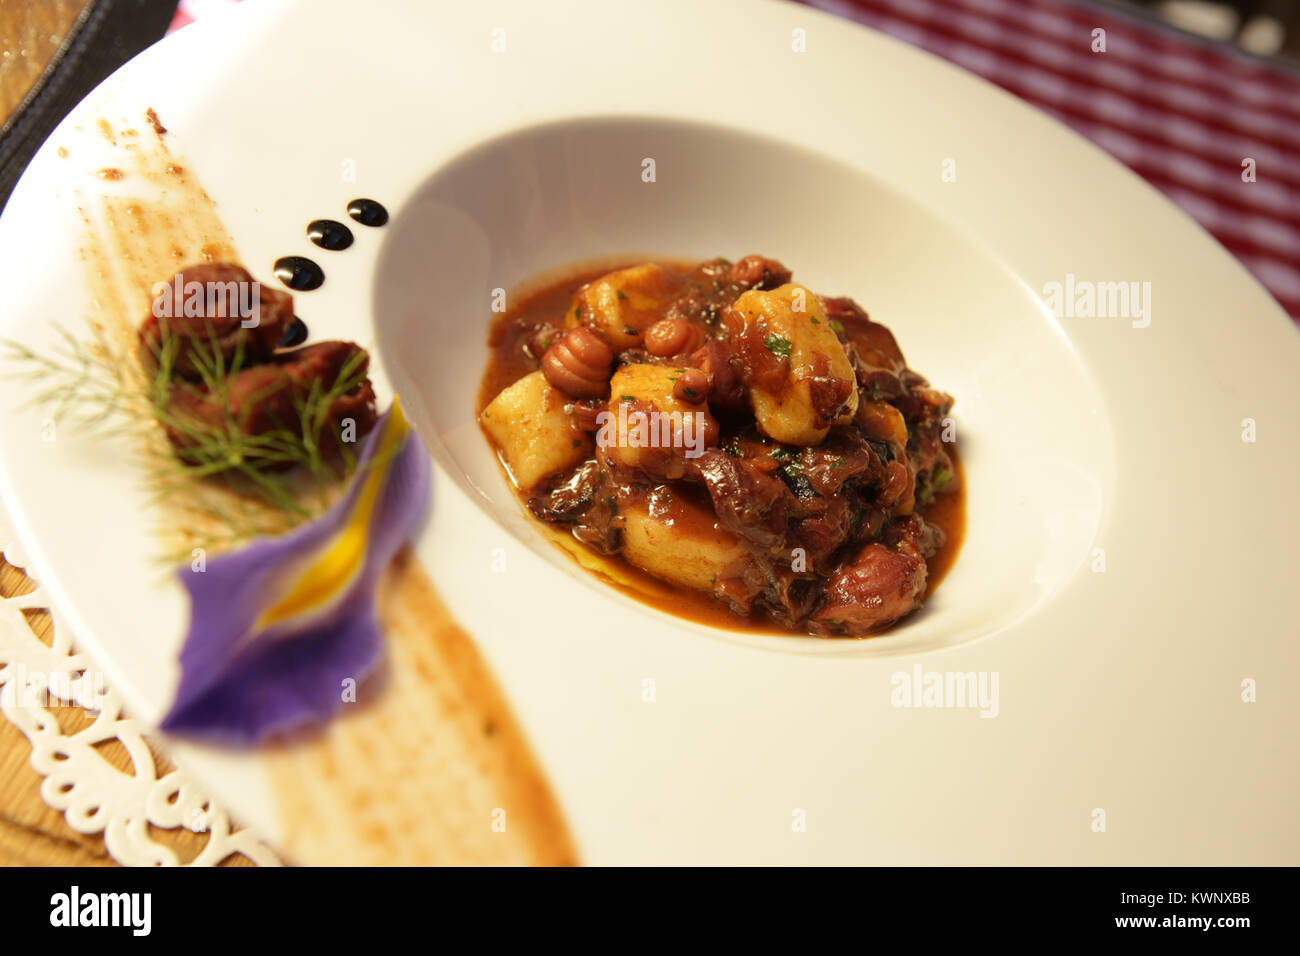 Pasticada with gnocchi, restaurant, Croatia. Stock Photo